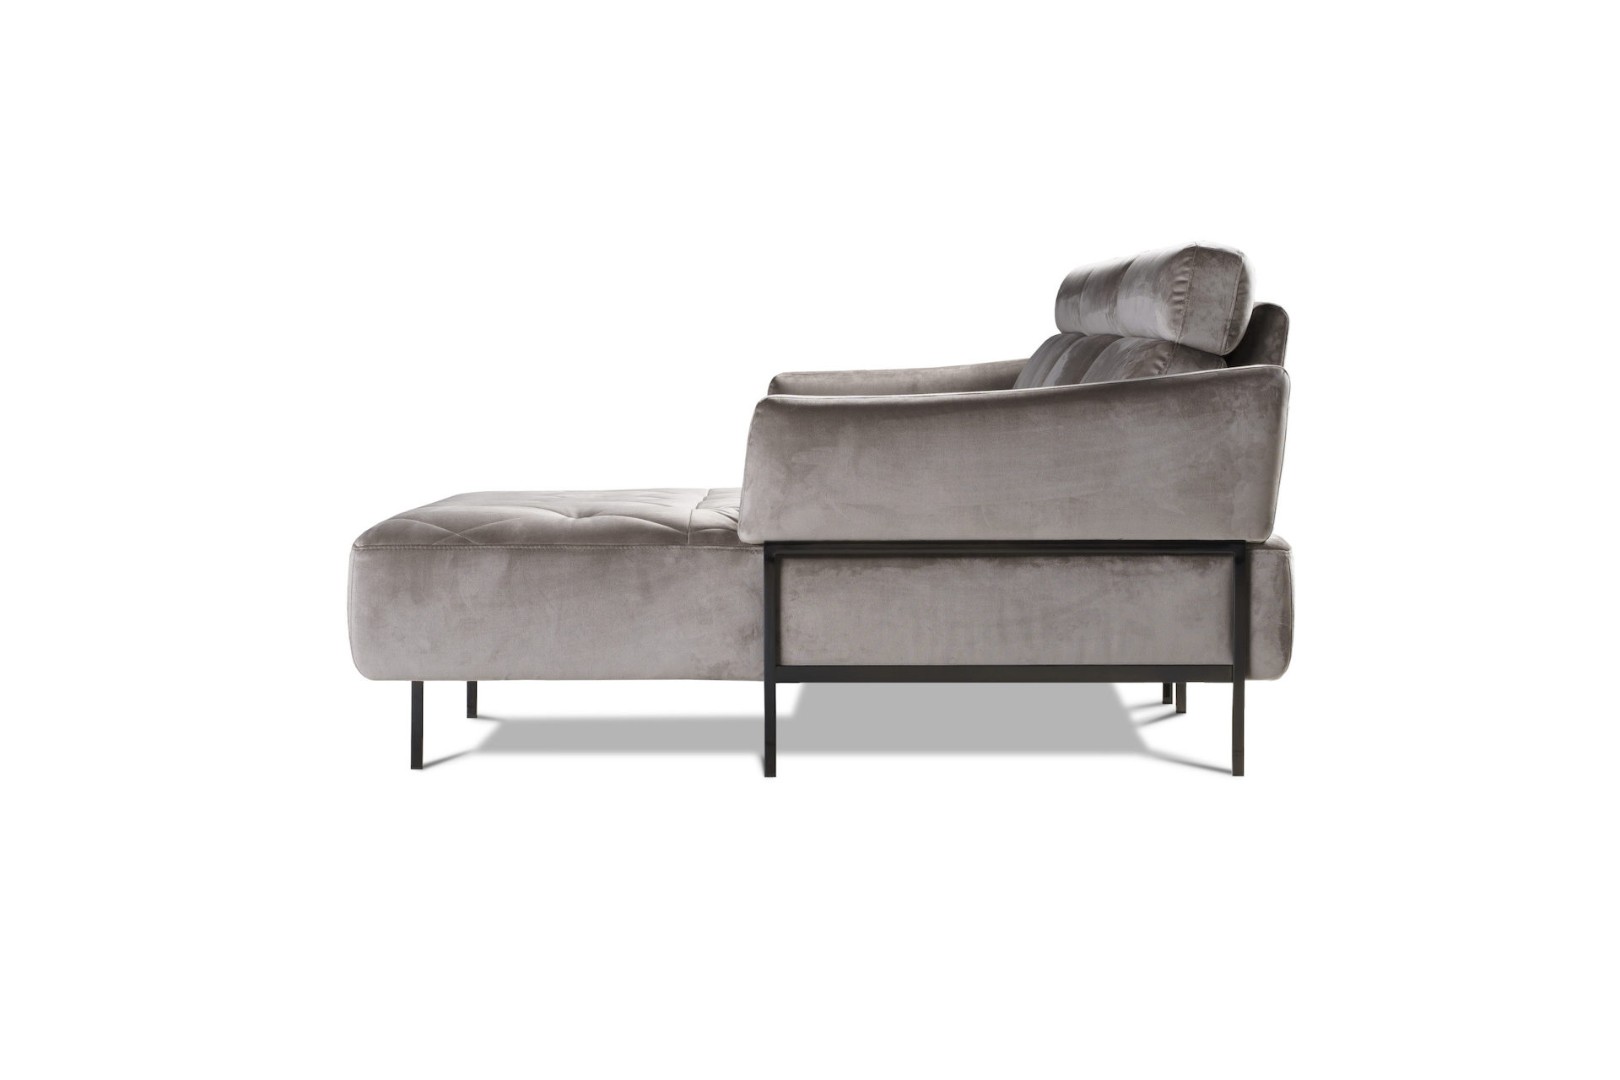 Модульный диван Bellini — 2311₽, купить у официального дилера Nicolettihome